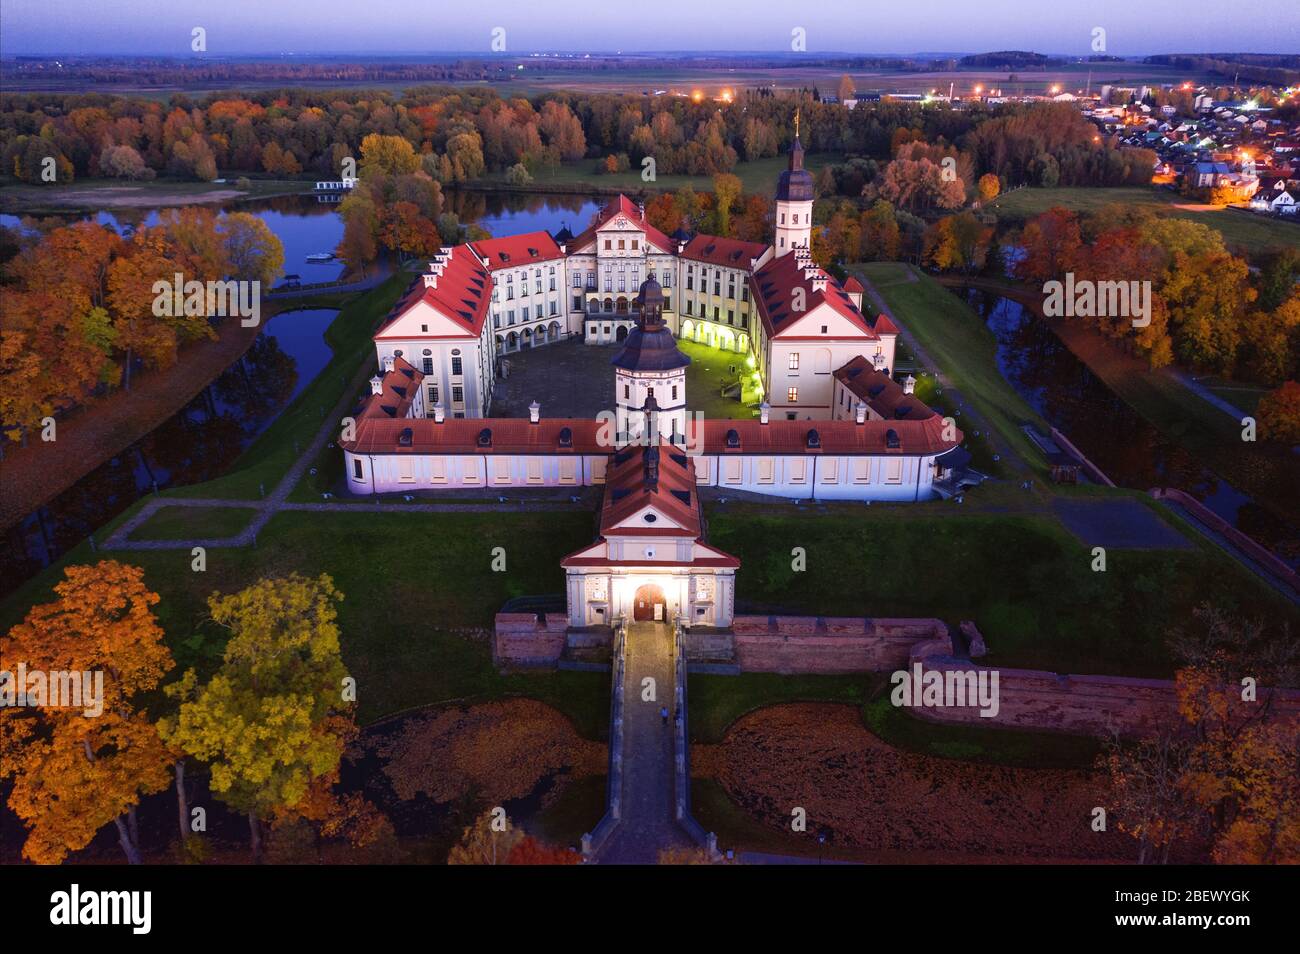 Vue aérienne du château de Nesvizh, Biélorussie. Attractions touristiques en Biélorussie. Vieux château en automne après l'aube Banque D'Images